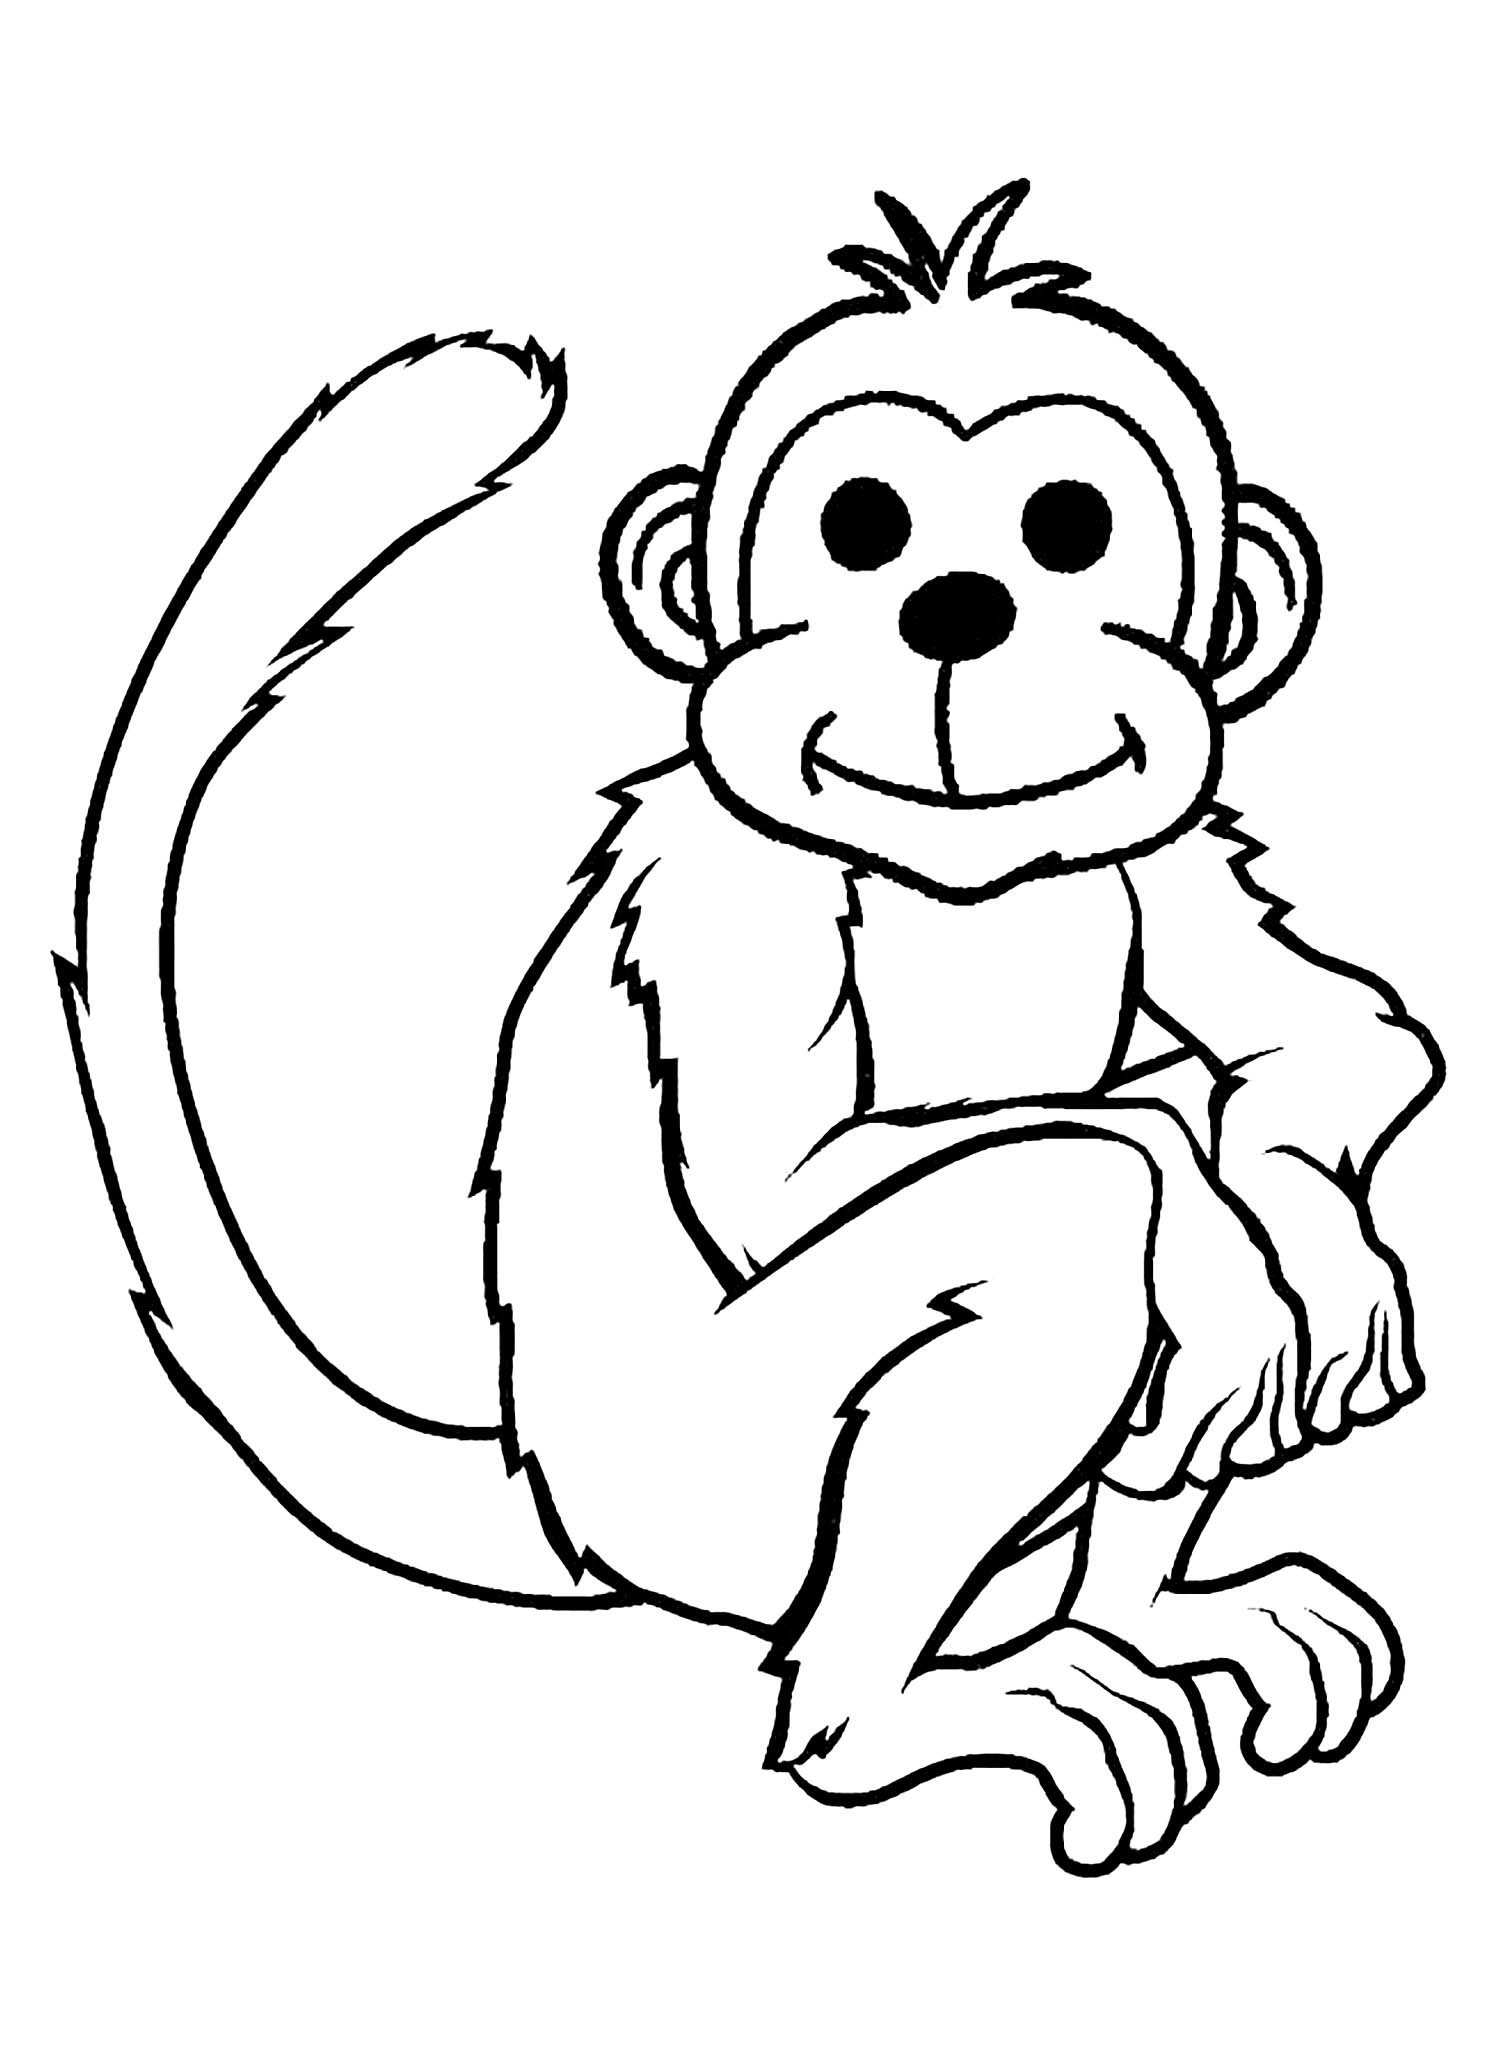 Macacos - Just Color Crianças : Páginas para colorir para crianças